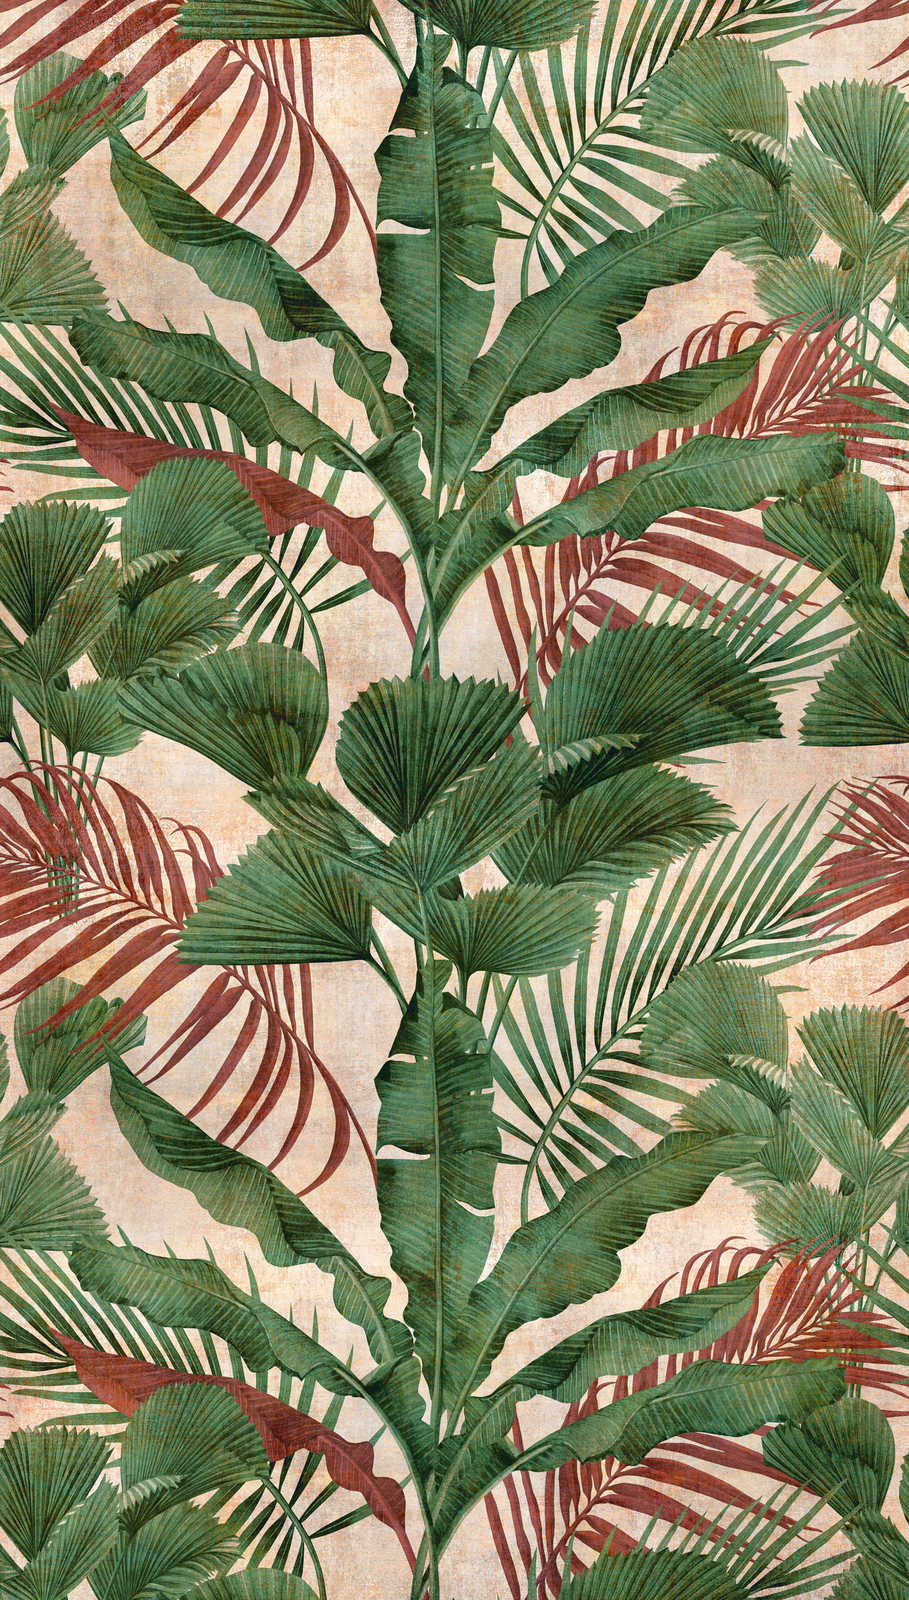             Papier peint jungle avec plantes tropicales - vert, beige, rouge
        